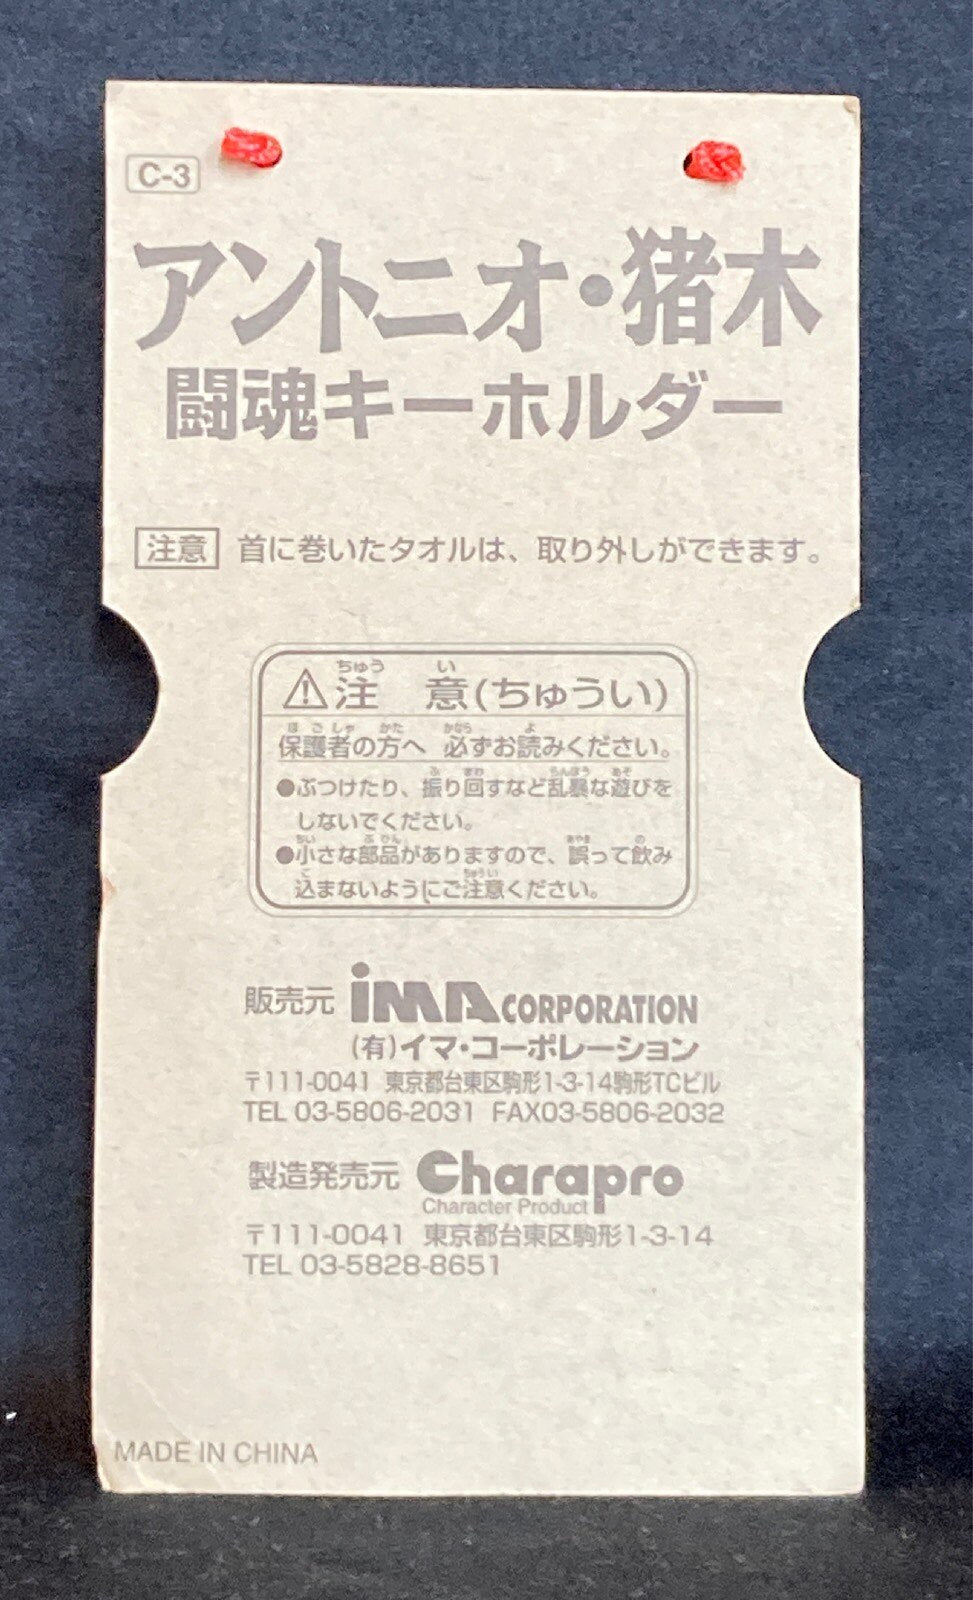 1999 CharaPro/Ima Corporation Antonio Inoki Fighting Spirit Keychain [With Red Towel]